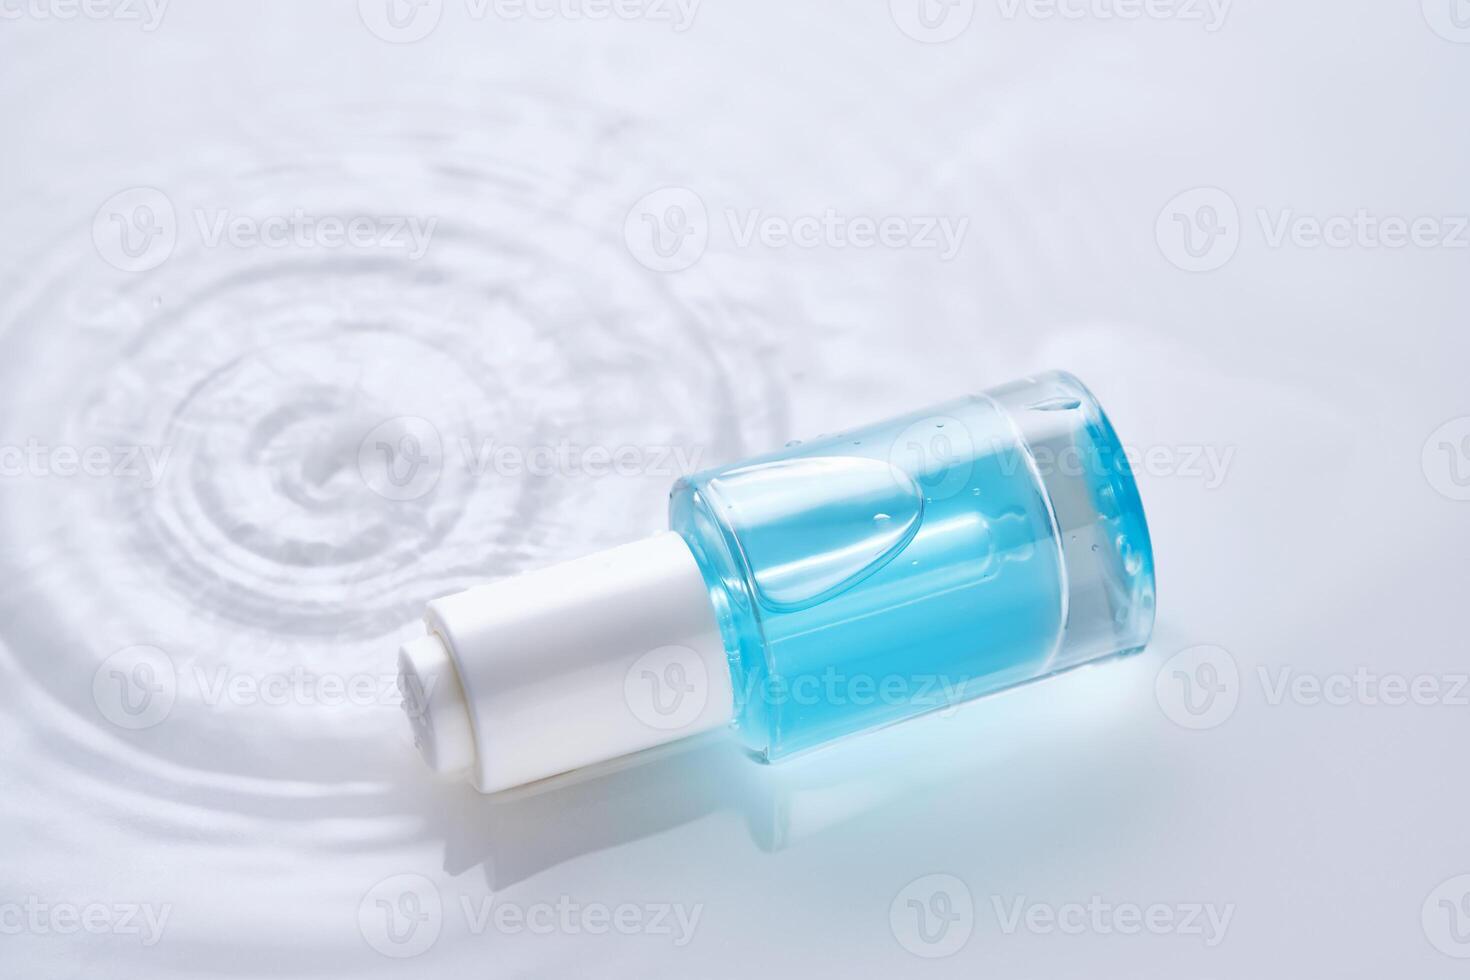 flessen van serum met een druppelaar in vloeistof met parel tinten. foto